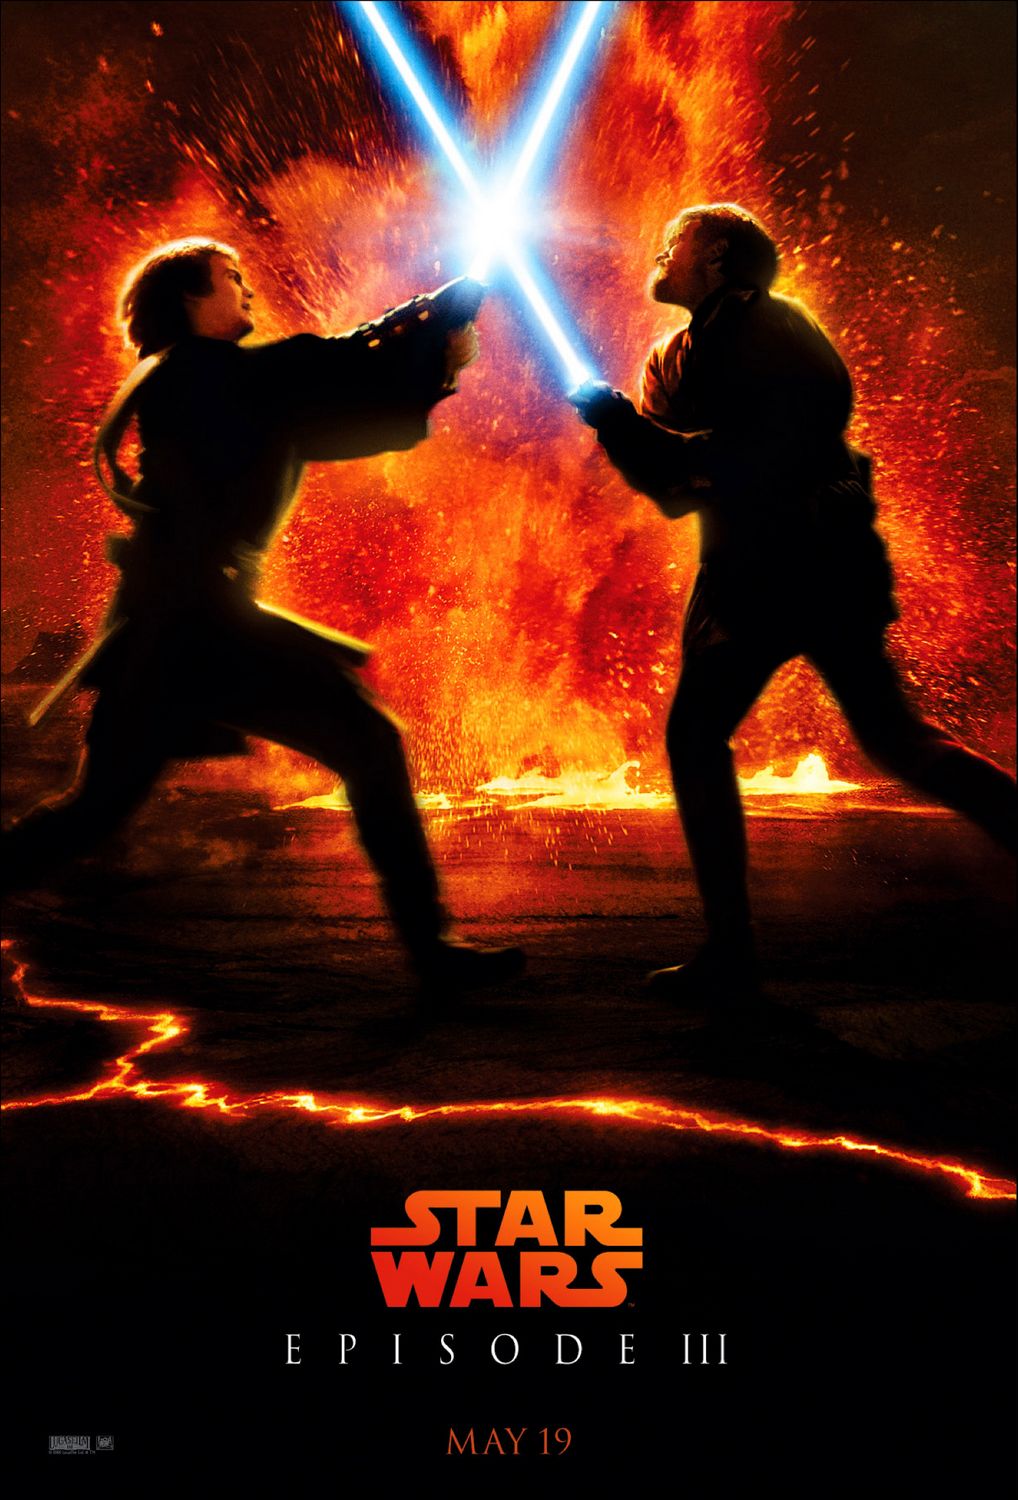 Star Wars: Episode III - Revenge of the Sith (2005) - IMDb